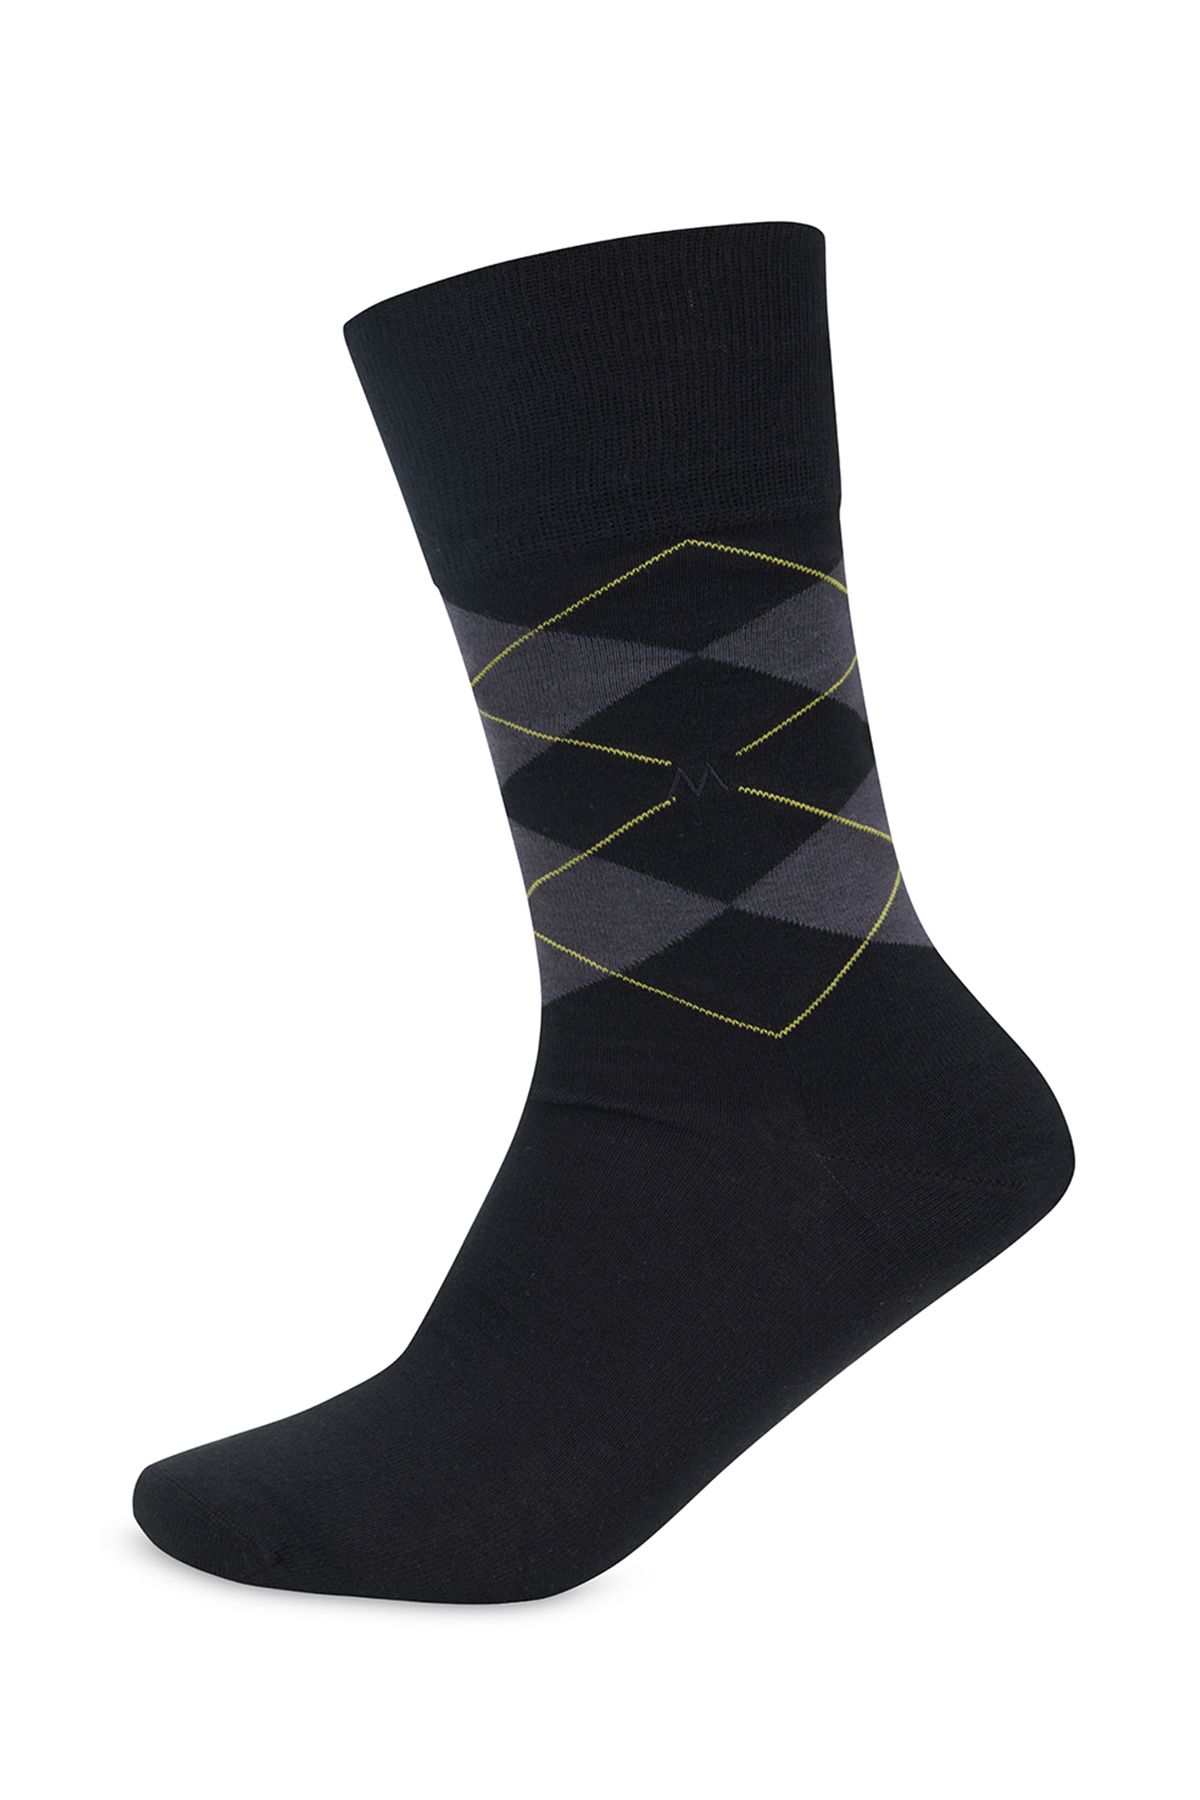 Hemington Baklava Desenli Yazlık Siyah Pamuk Çorap